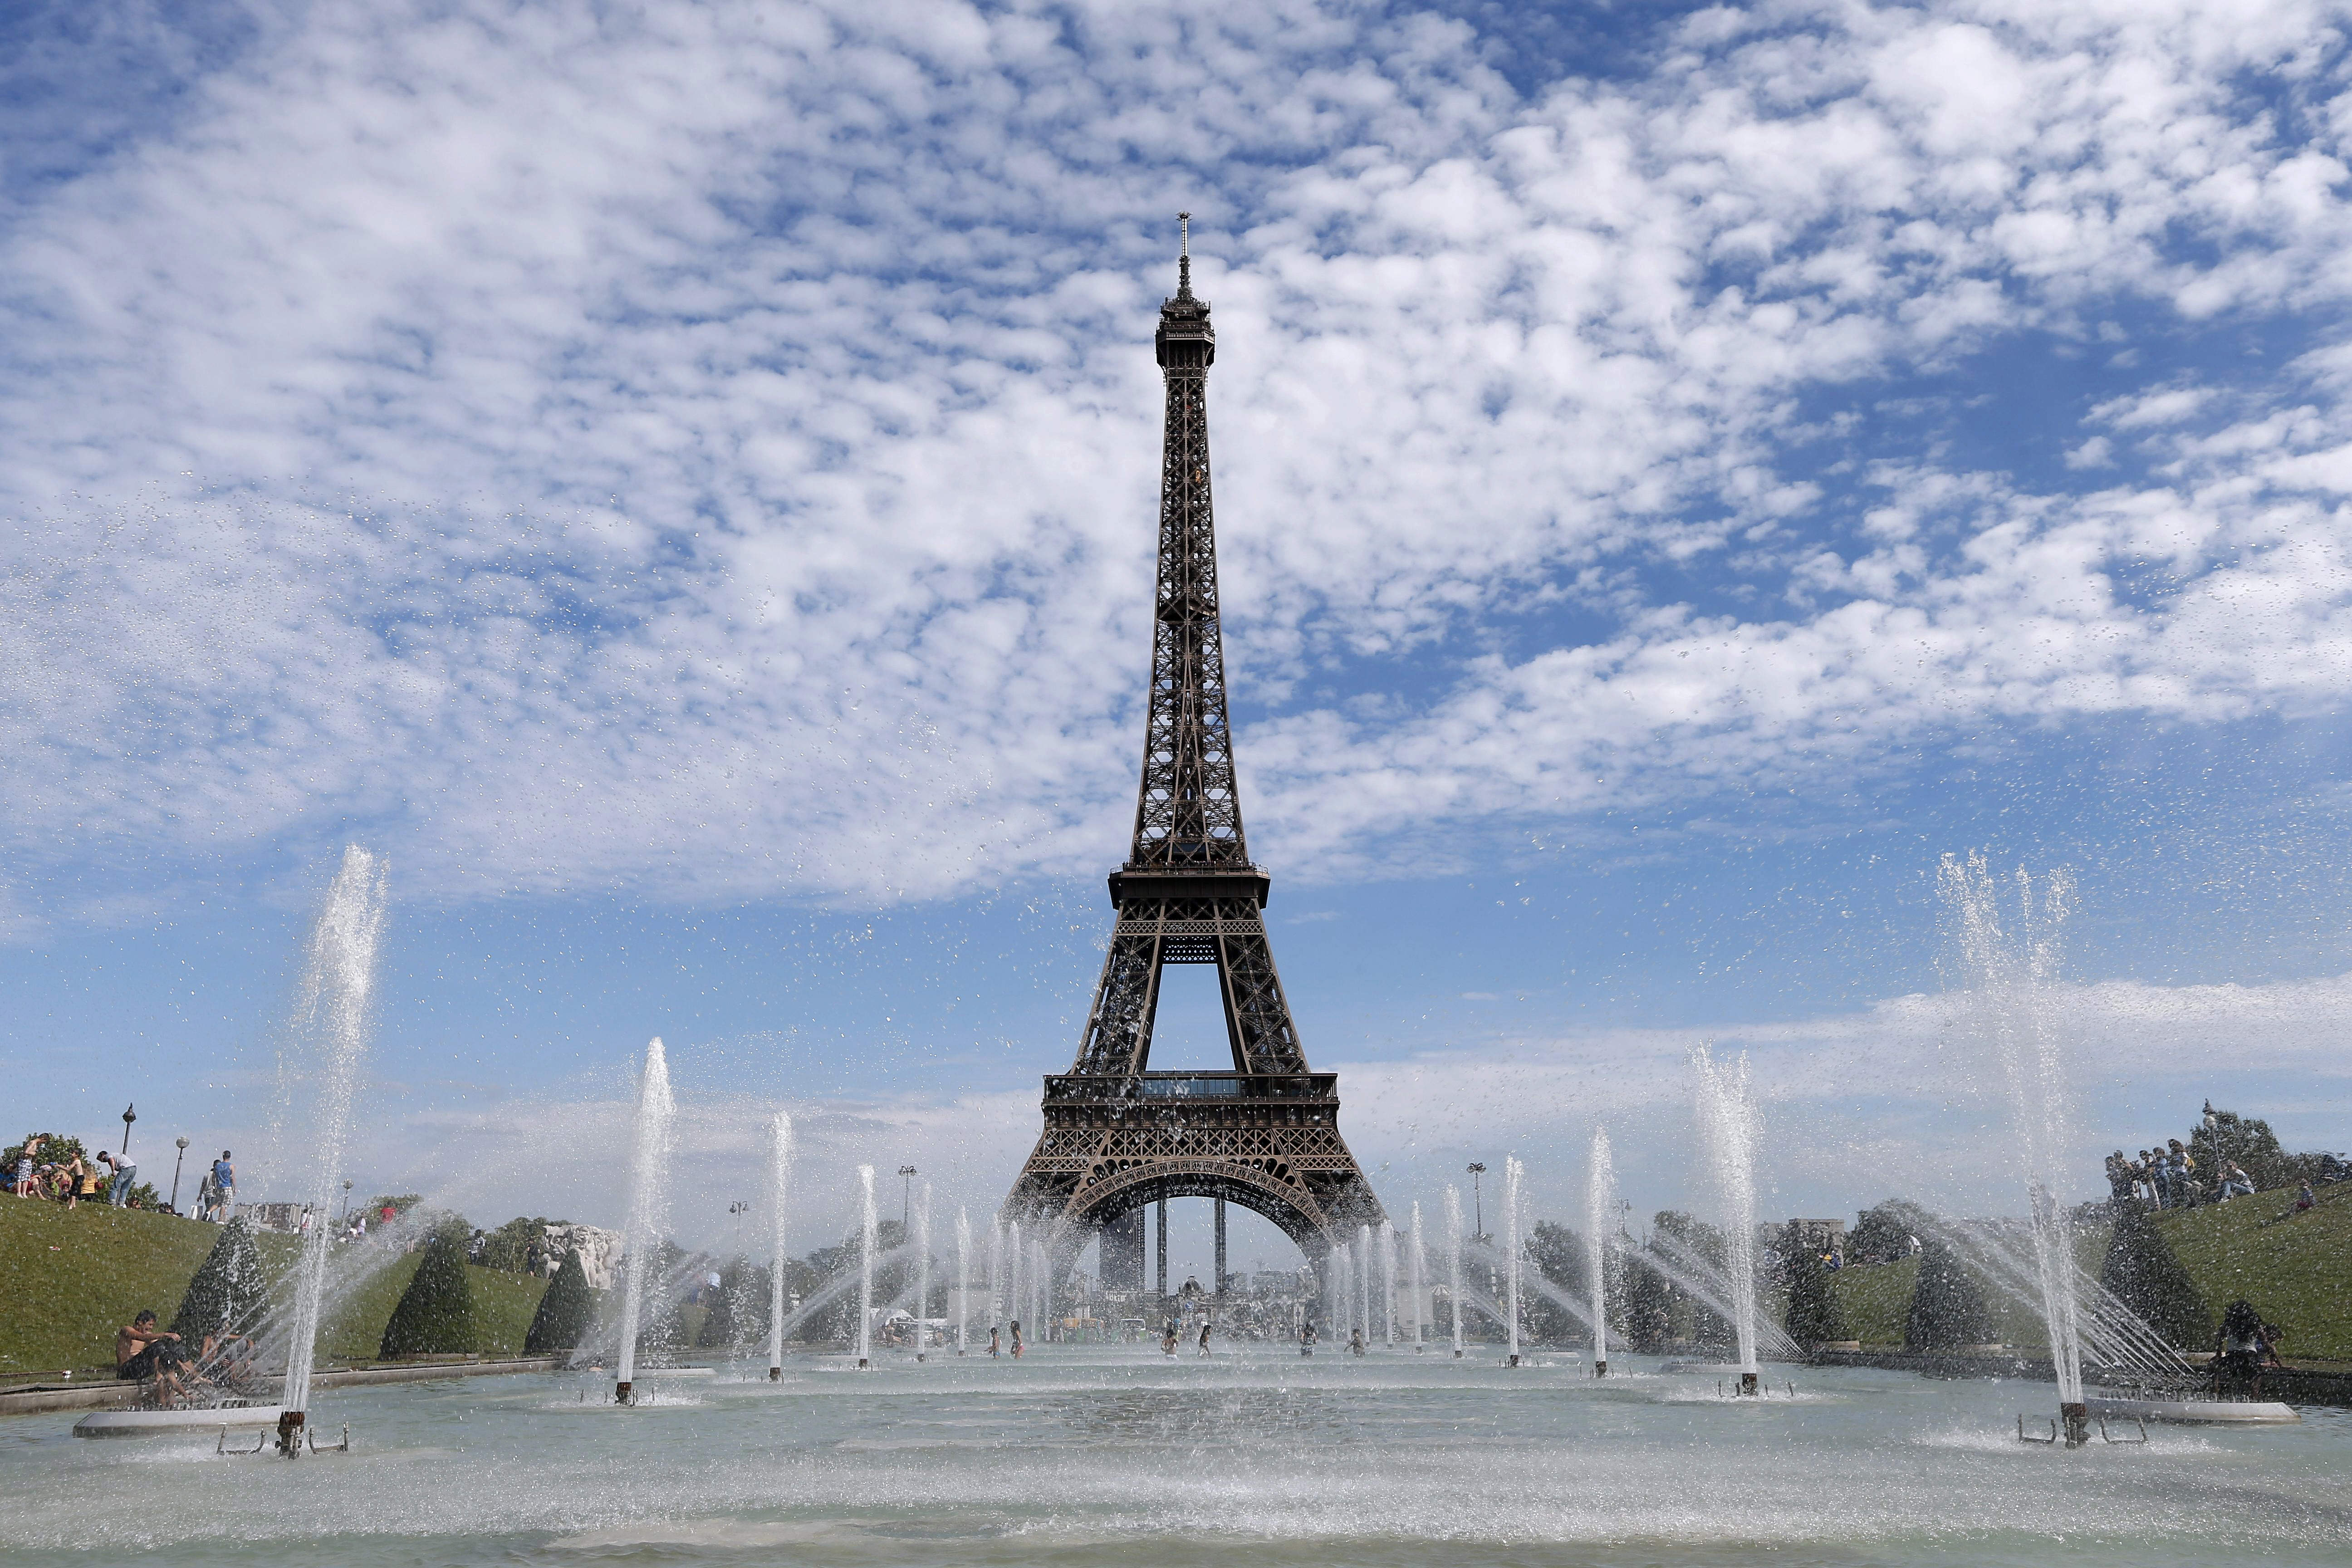 歐洲旅遊業受不景氣影響，上半年業績已掉了10%，今年夏天訂房率亦大幅下滑。圖為遊法旅客必到的巴黎艾菲爾鐵塔。